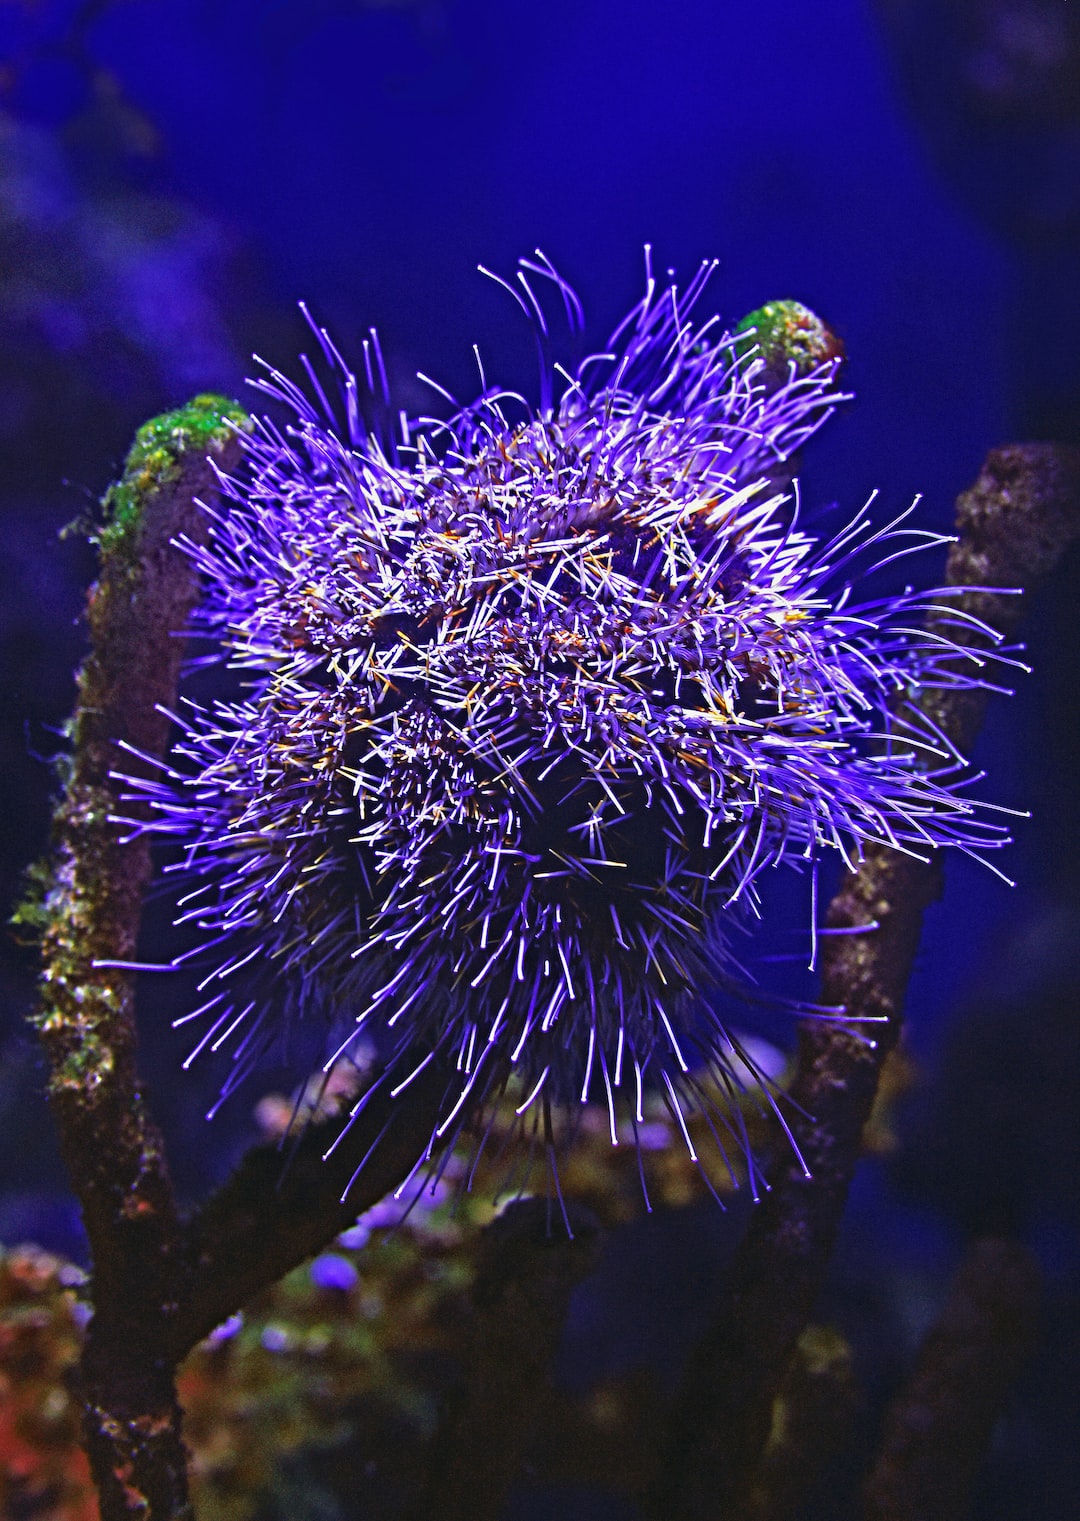 21 wichtige Fragen zu Aussenfilter Für Aquarium